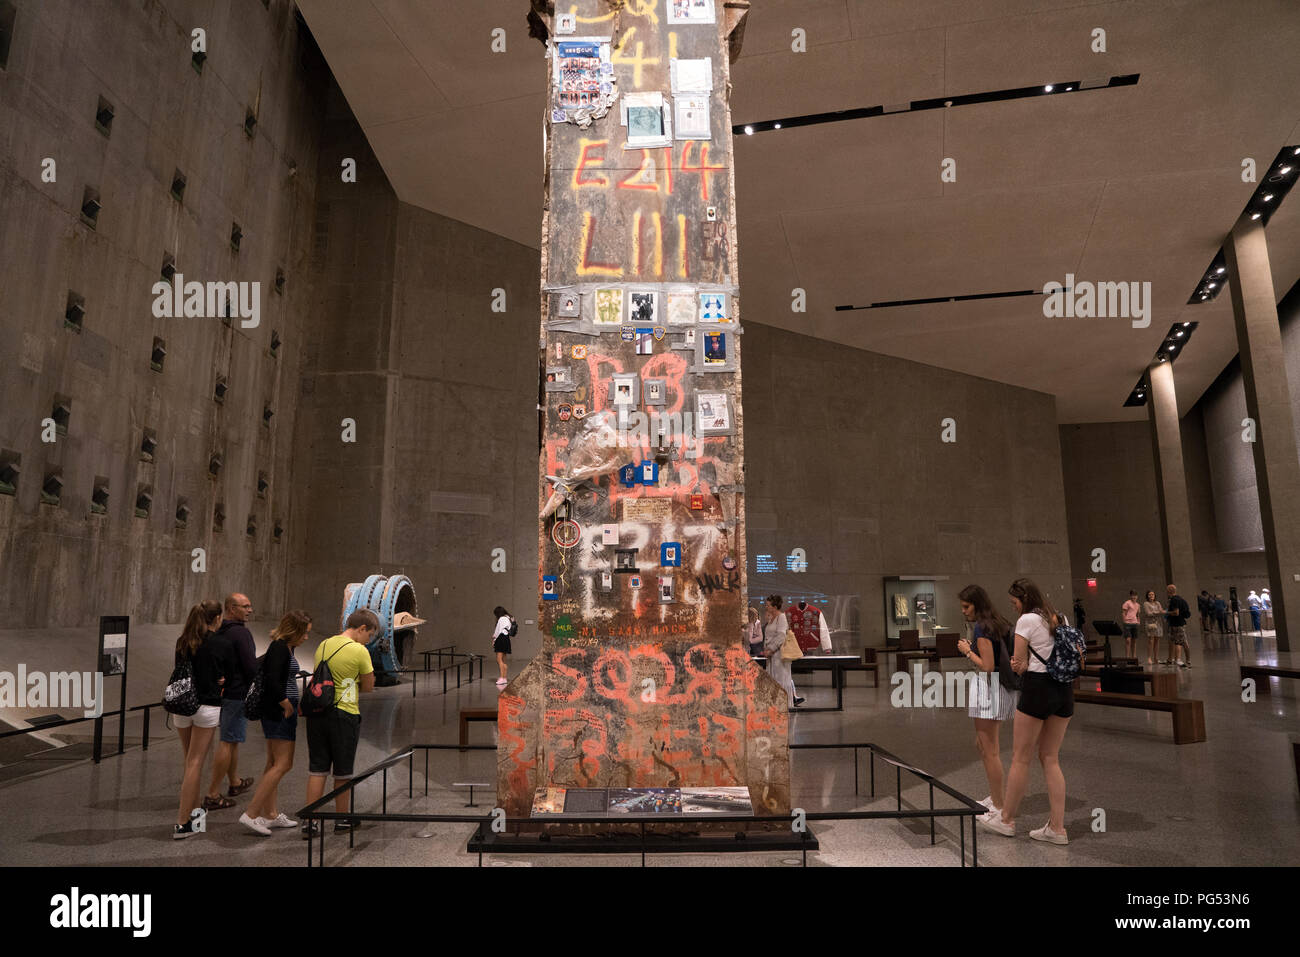 A 36-foot-tall maintenant la colonne dans un musée, a été la dernière à être retirée de Ground Zero après le World Trade Center a été détruit le 11 septembre 2001. Banque D'Images